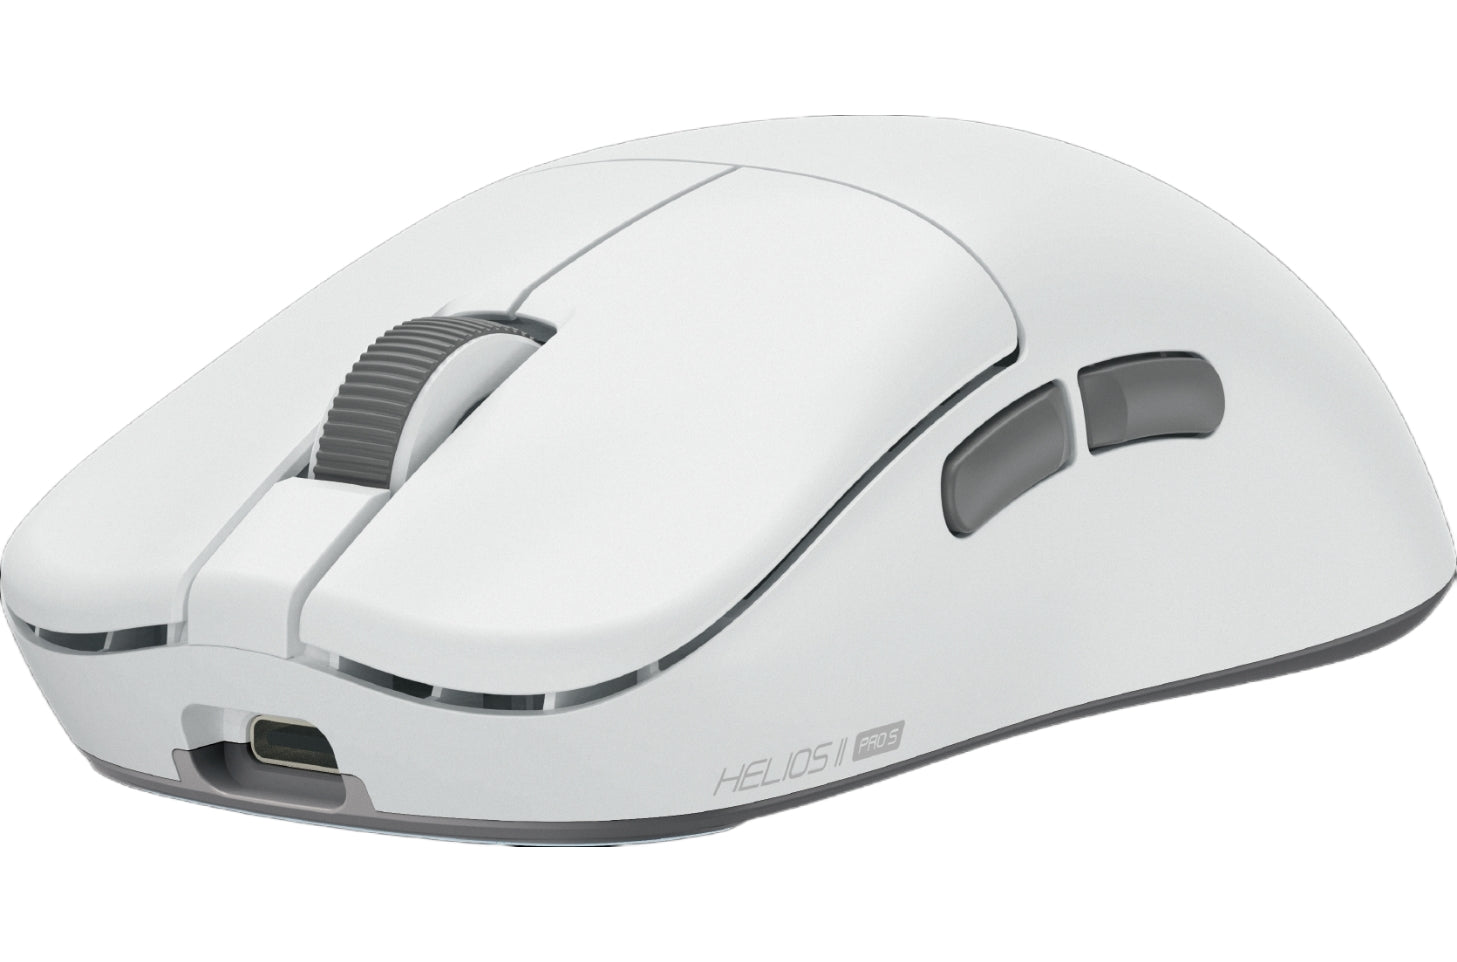 Fantech Helios II Pro S XD3V3 4K8K Wireless Mouse